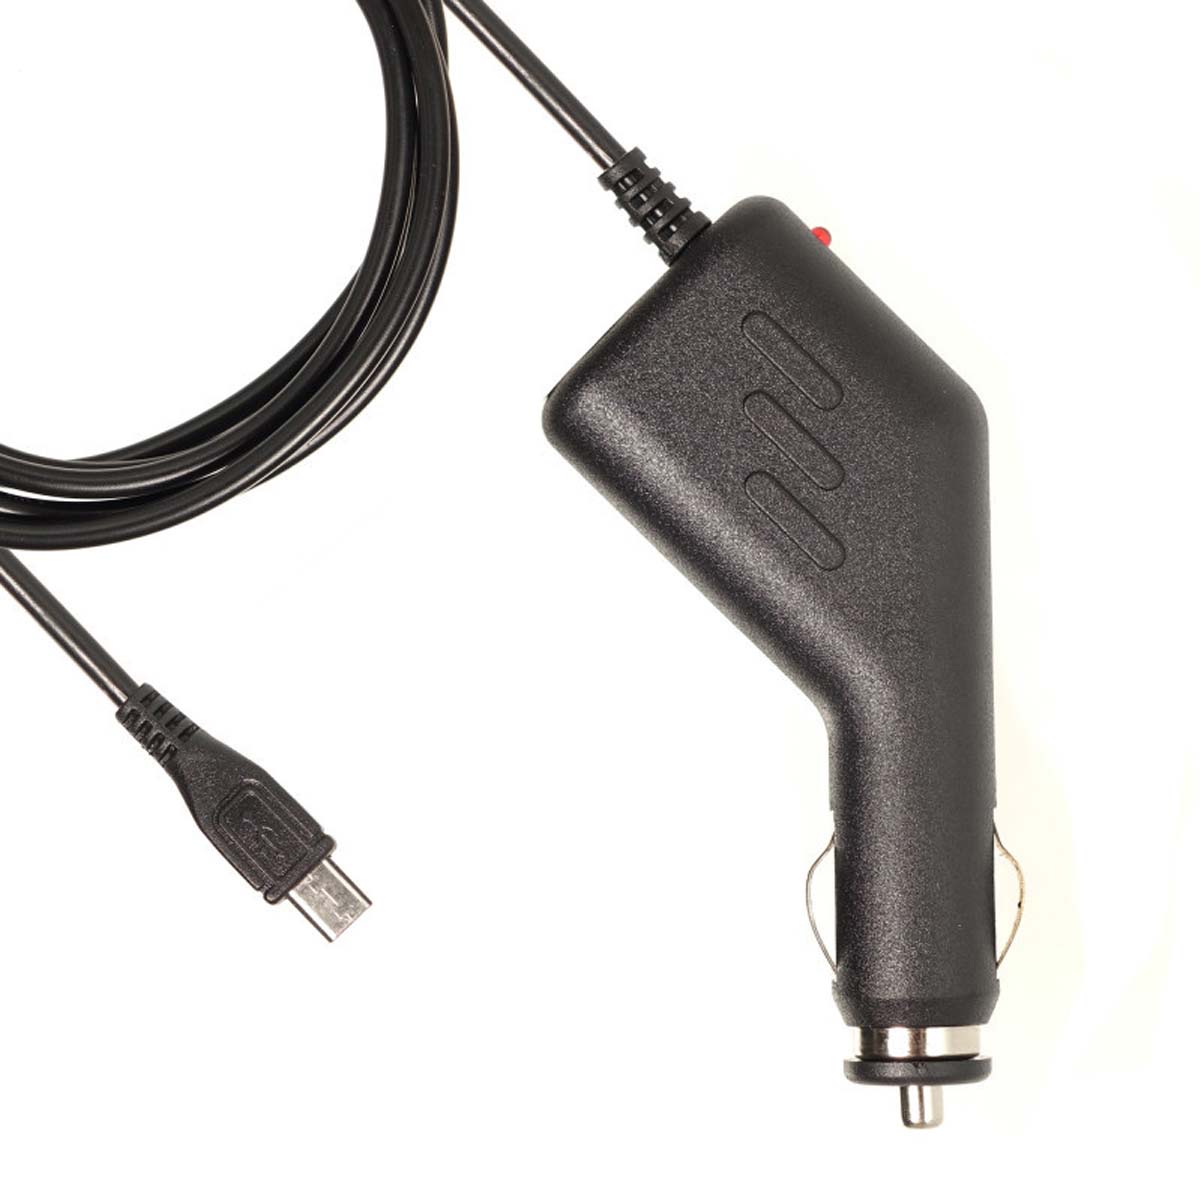 АЗУ (Автомобильное зарядное устройство) LP6 V8 с кабелем Micro USB, длина 1.5 метра, цвет черный